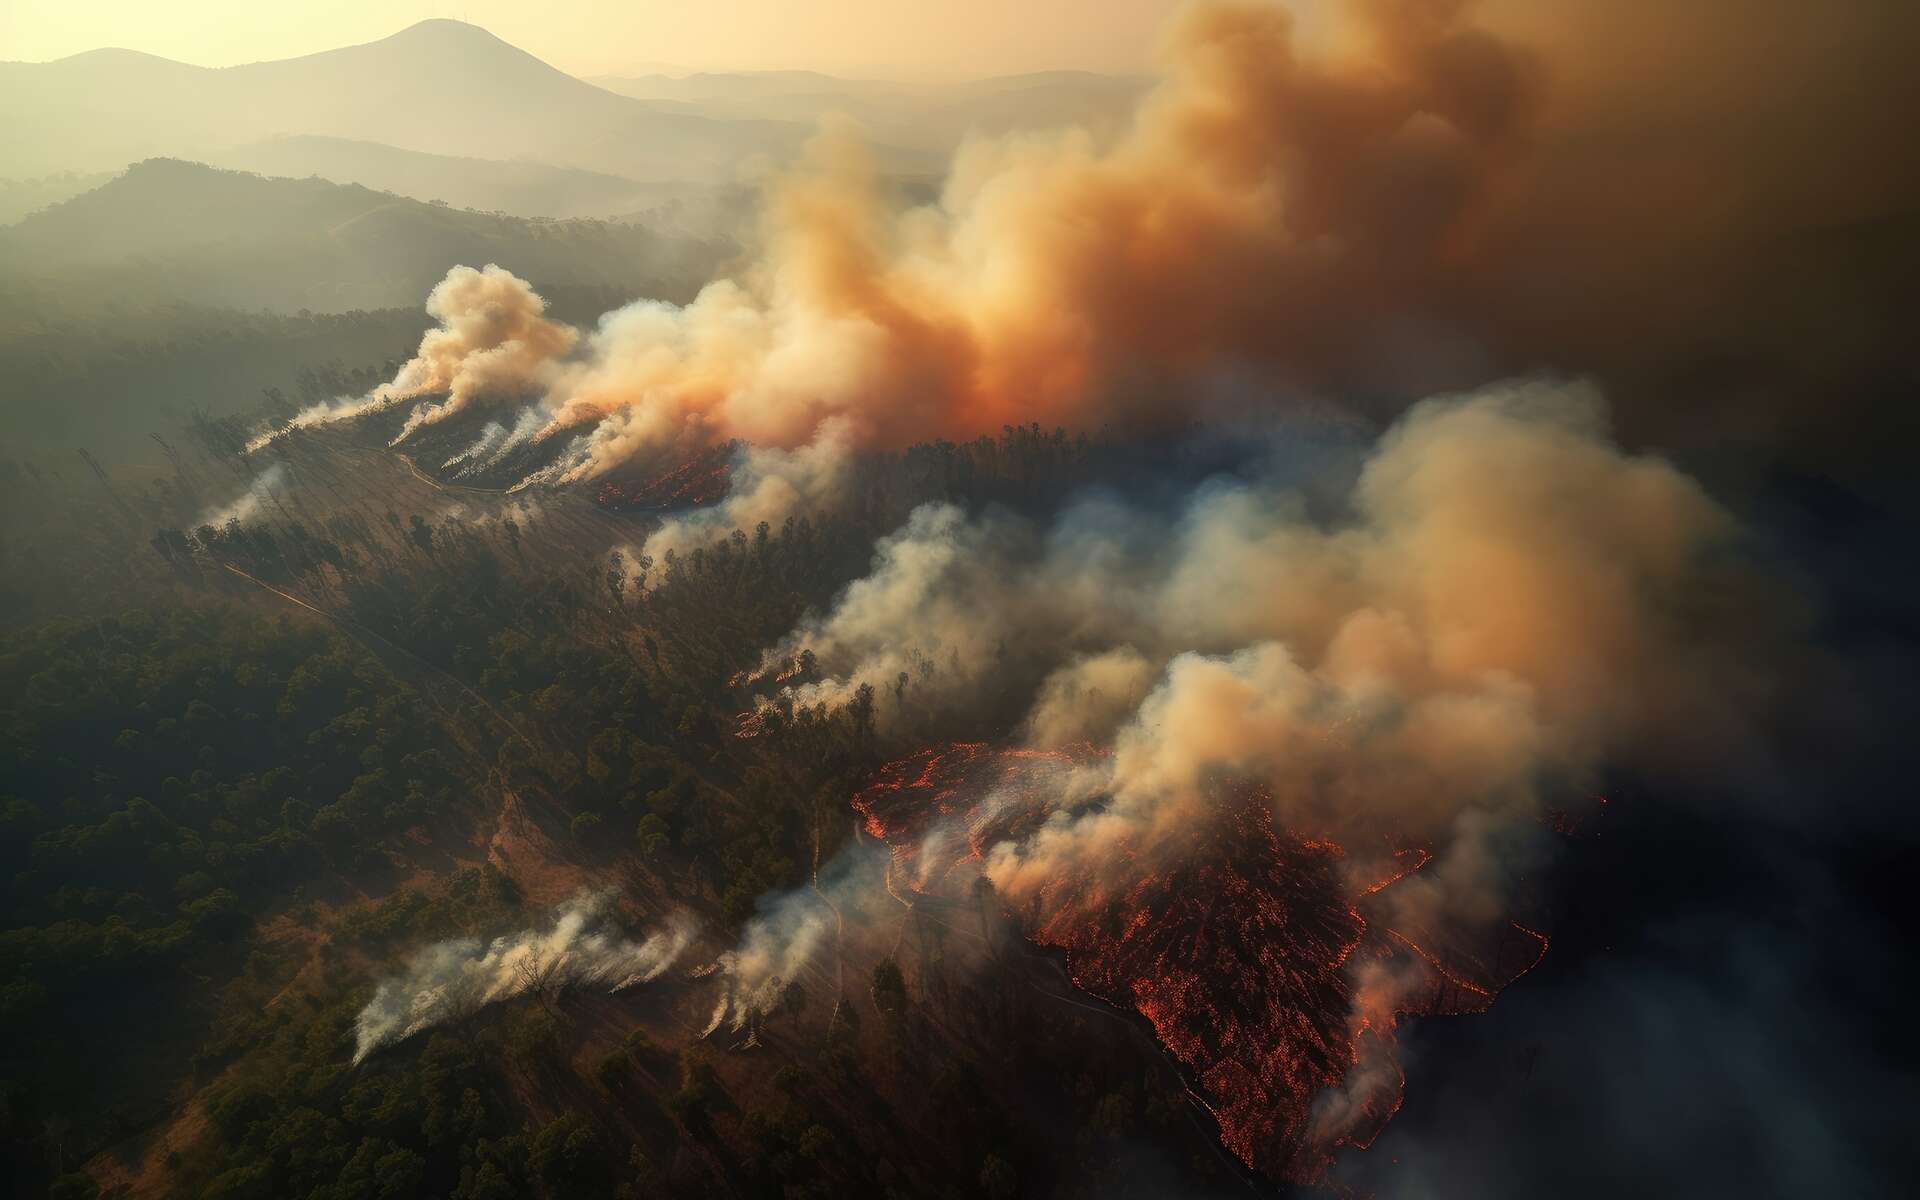 Les 10 millions d'hectares de forêt brûlés au Canada provoquent un nuage de fumée aux dimensions records